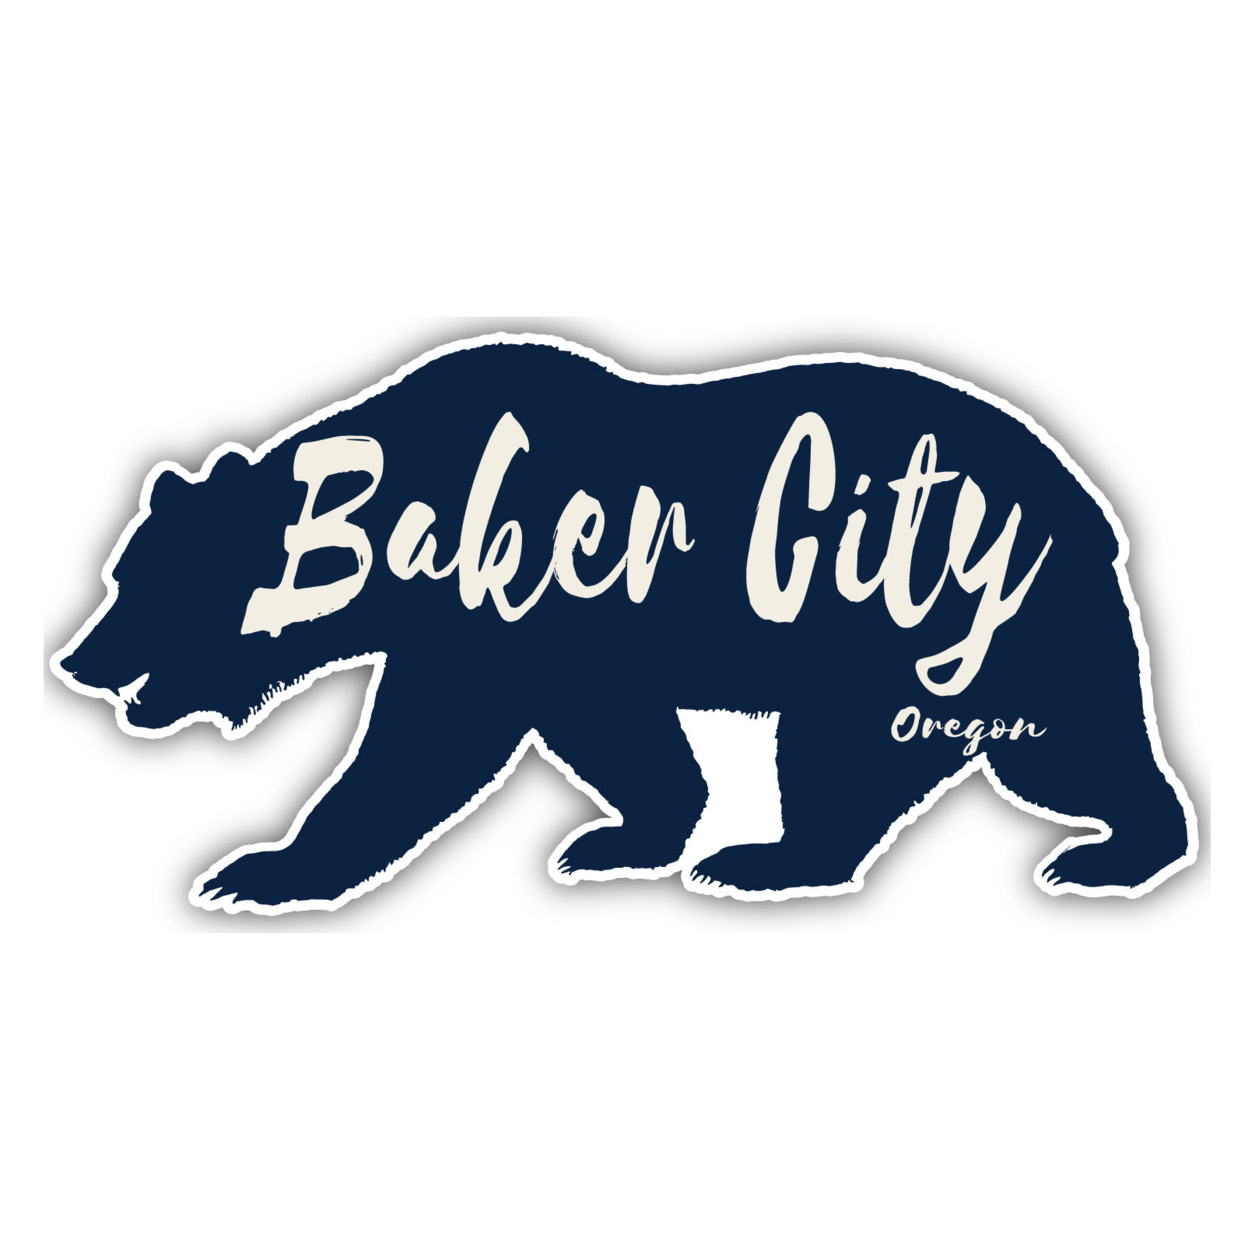 Baker City Oregon Souvenir Decorative Stickers (Choose Theme And Size) - Single Unit, 2-Inch, Tent